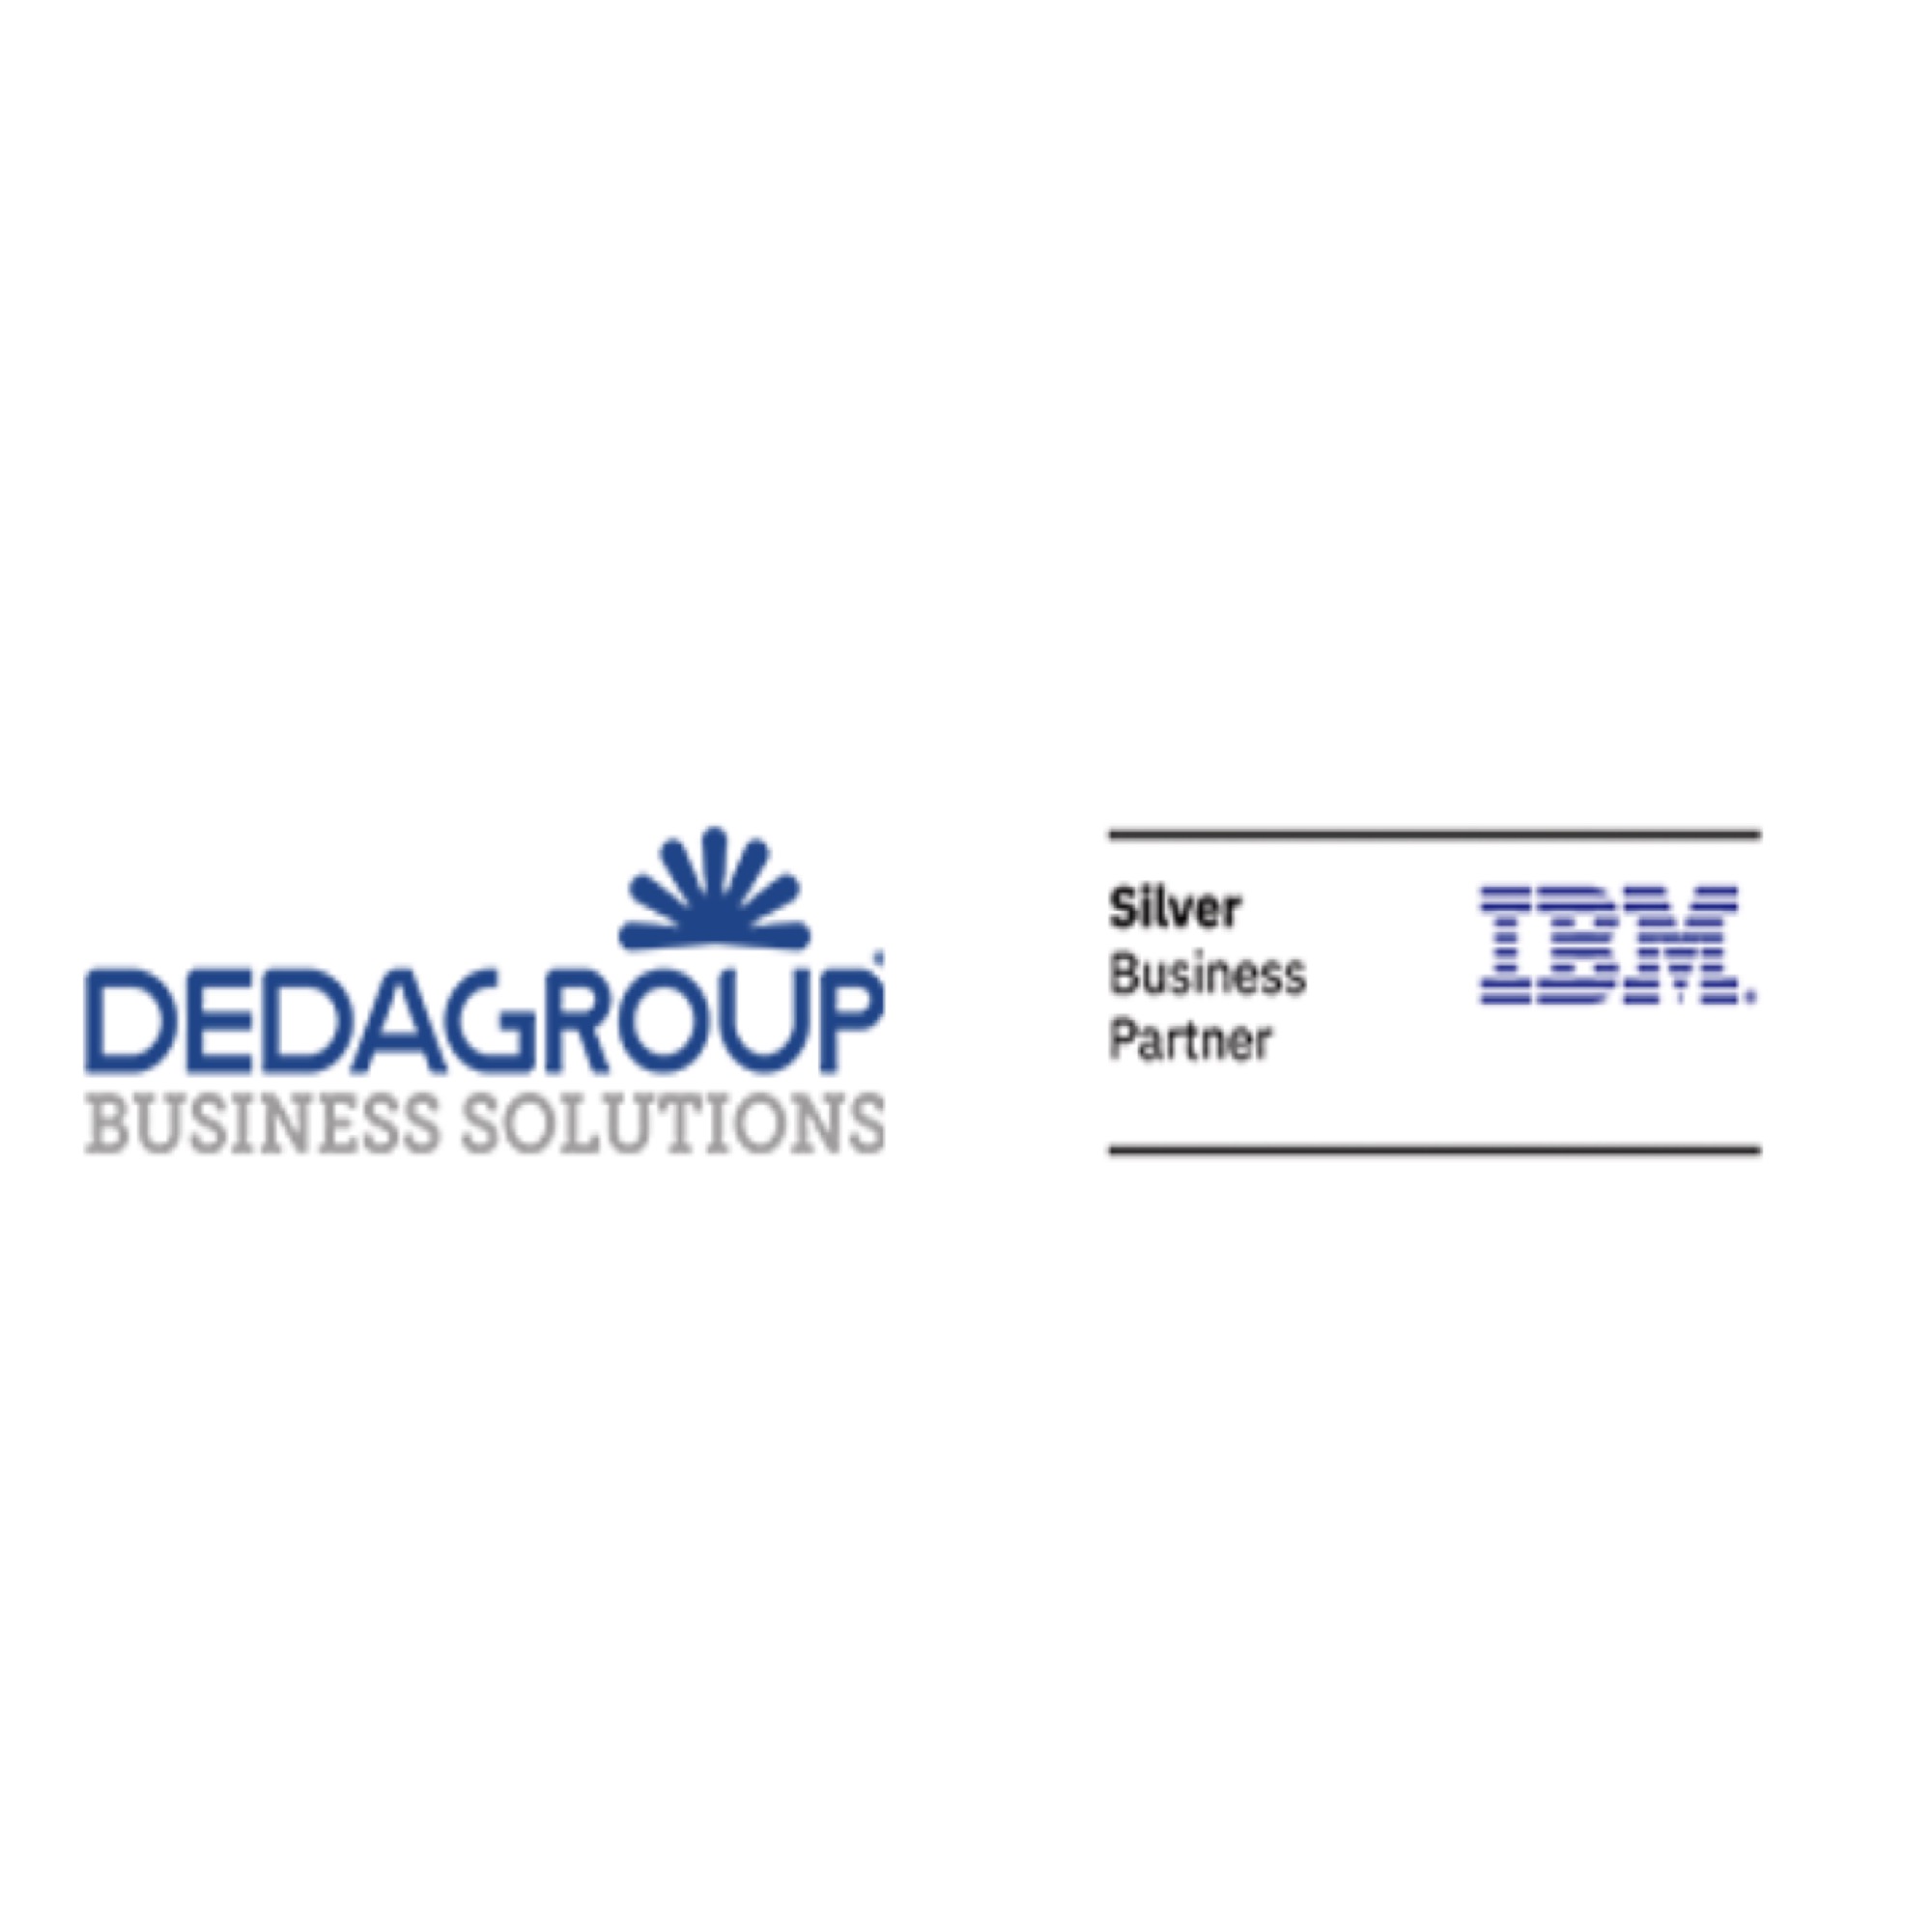 Bancaforte Live Banking DEDAGROUP BUSINESS SOLUTIONS, SILVER BUSINESS PARTNER IBM Logo